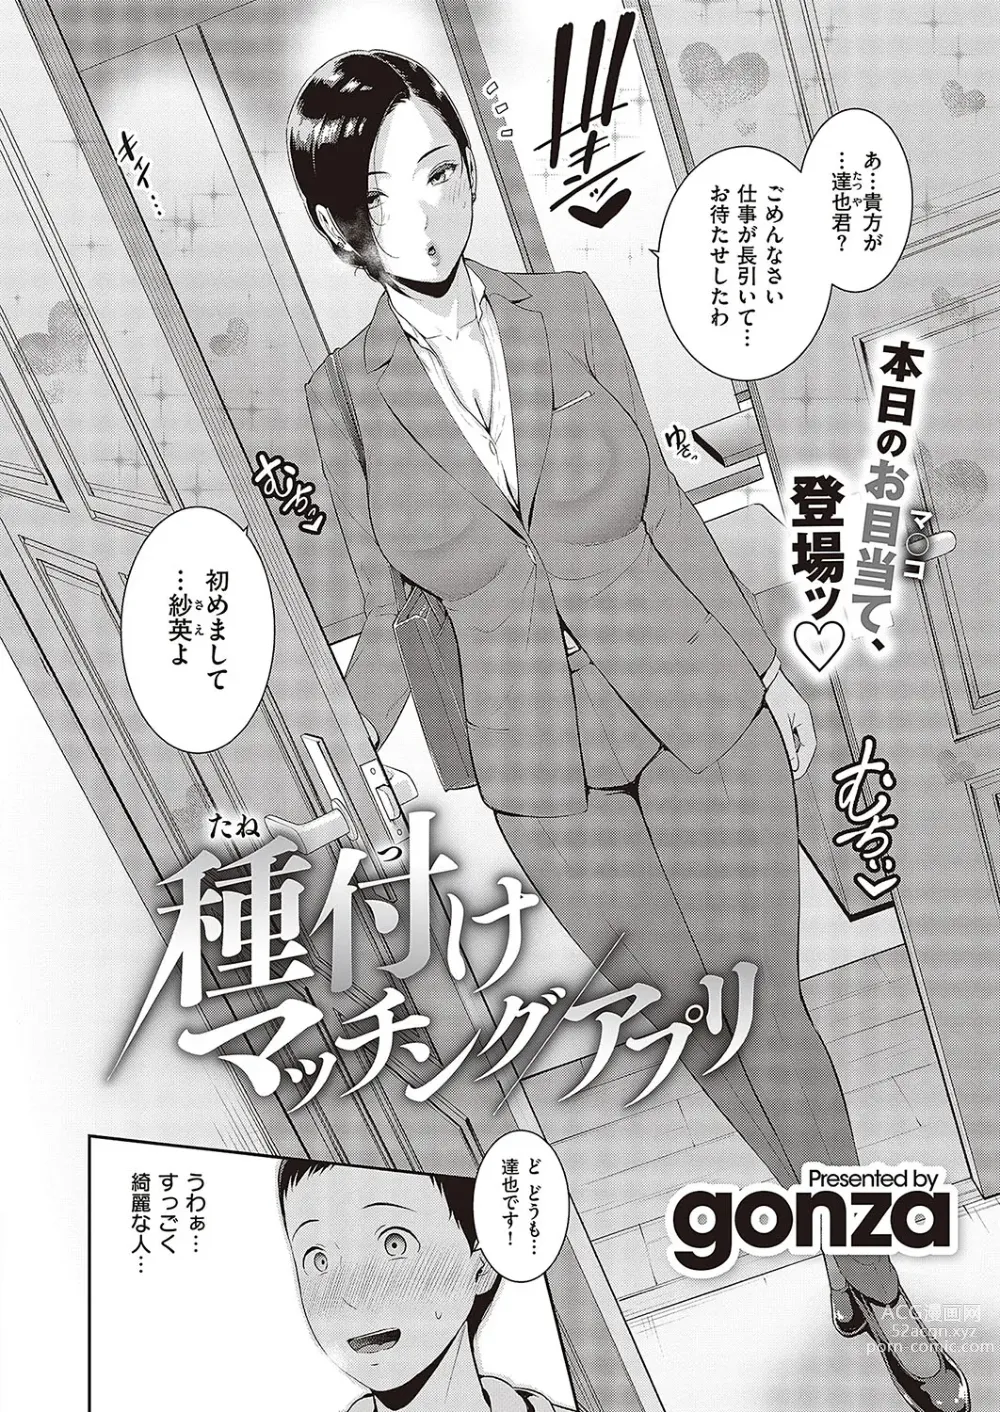 Page 2 of manga 種付けマッチングアプリ Cap.1-2